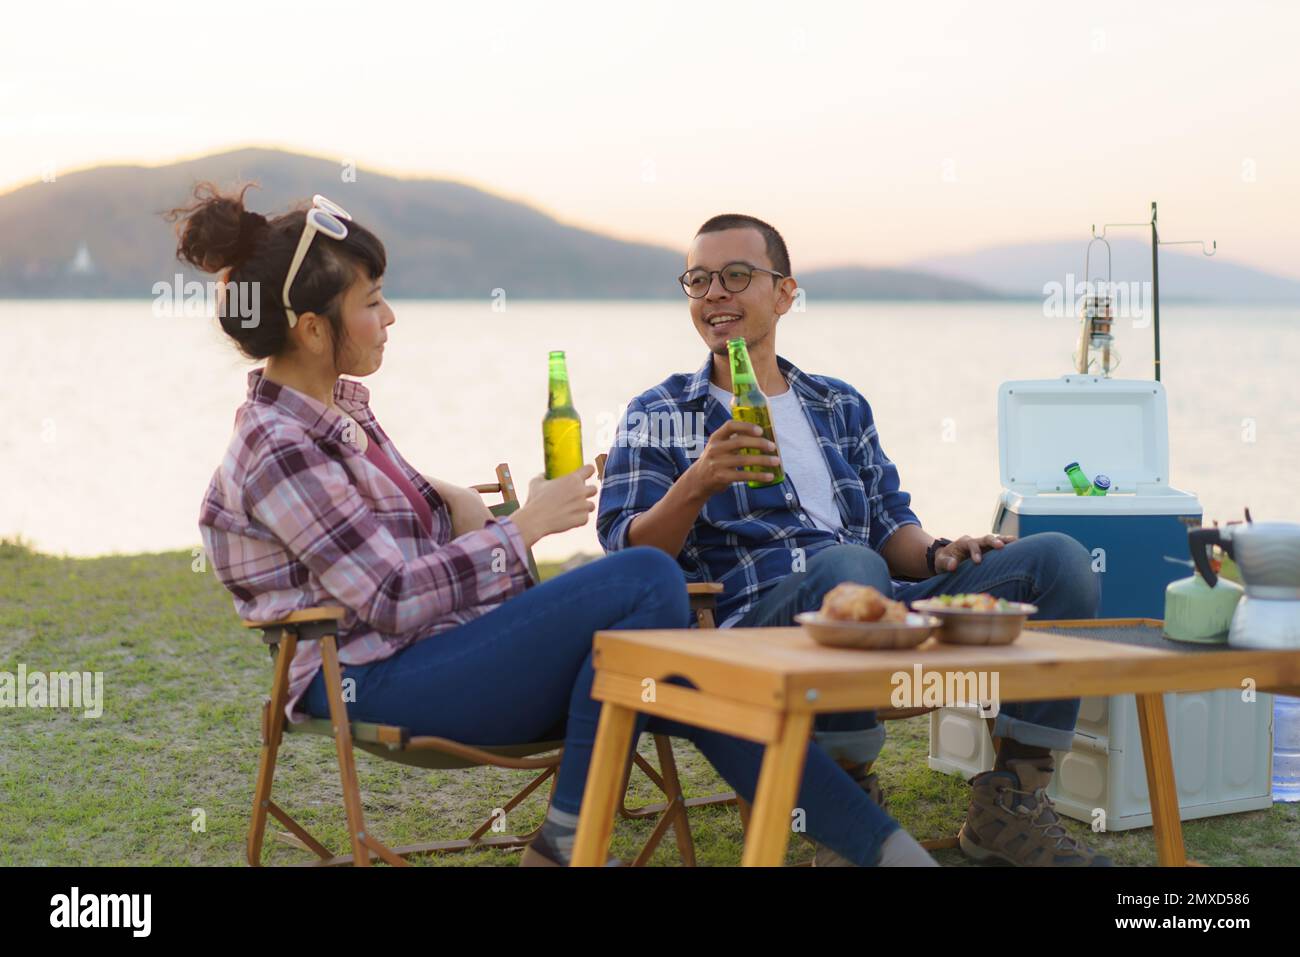 Ein asiatisches Paar trinkt Bier aus einer Flasche in seinem Campingbereich mit See im Hintergrund während des Sonnenuntergangs. Stockfoto